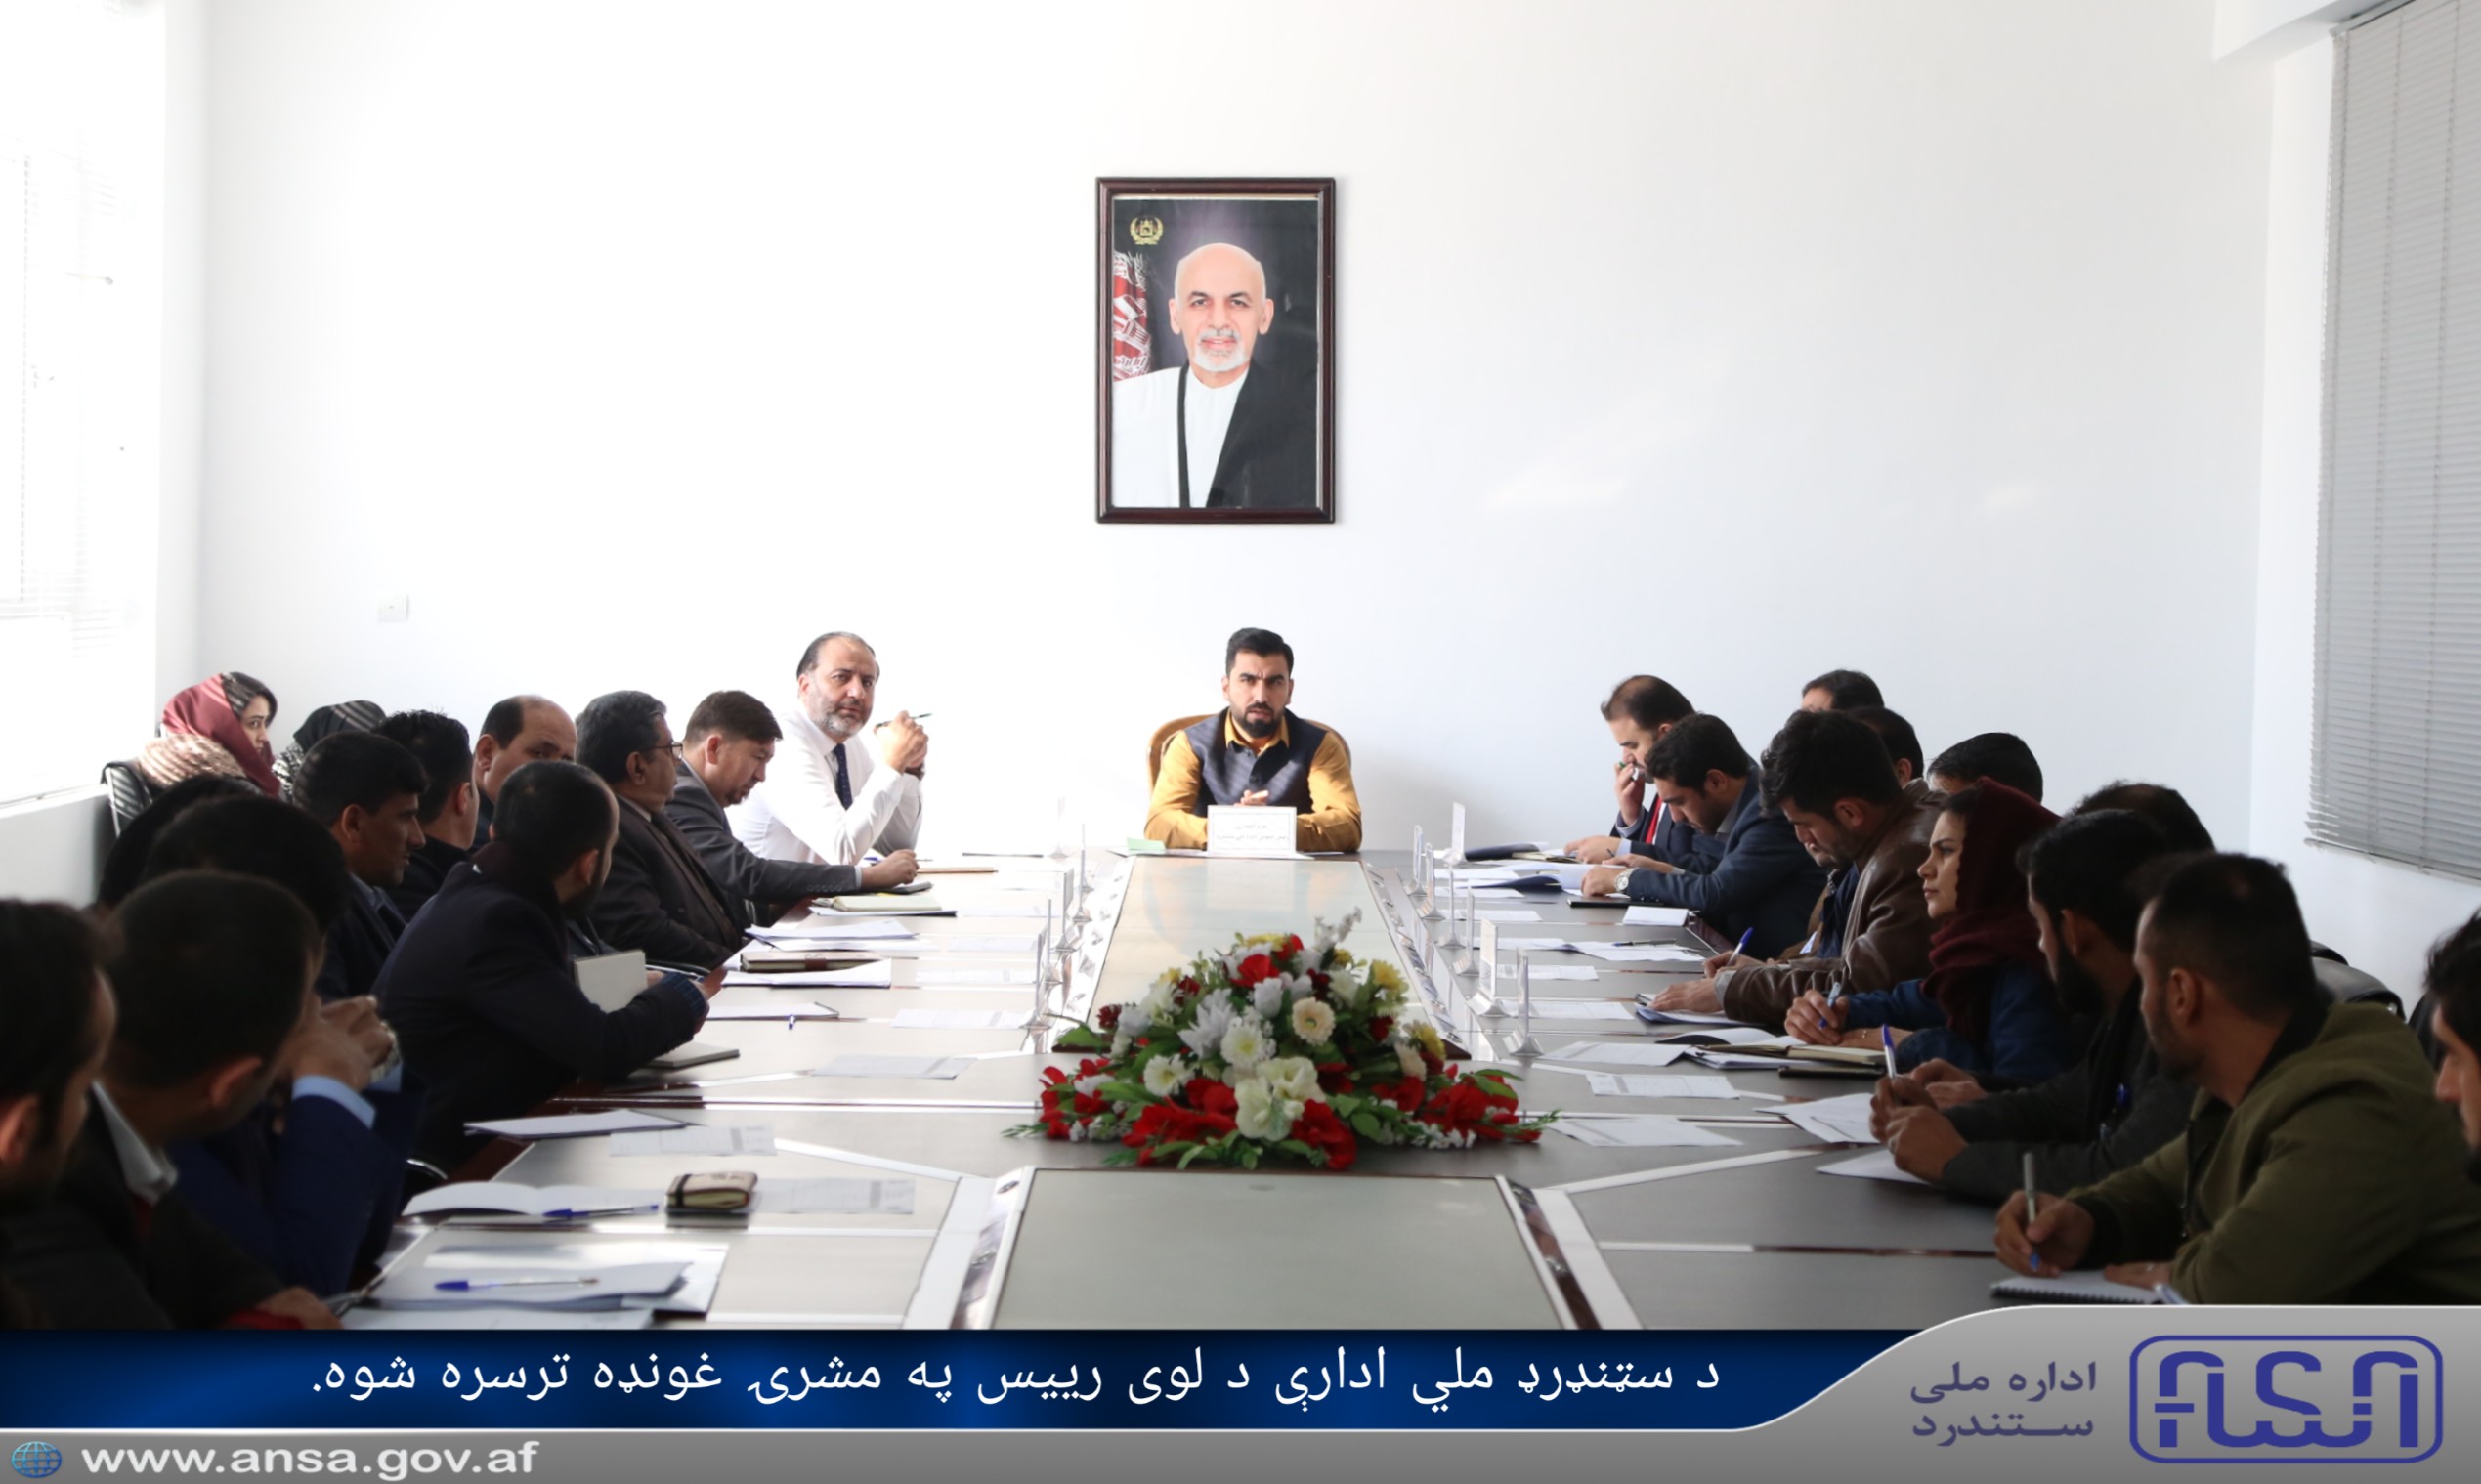 Afghanistan National Standards Authority leadership board held meeting.